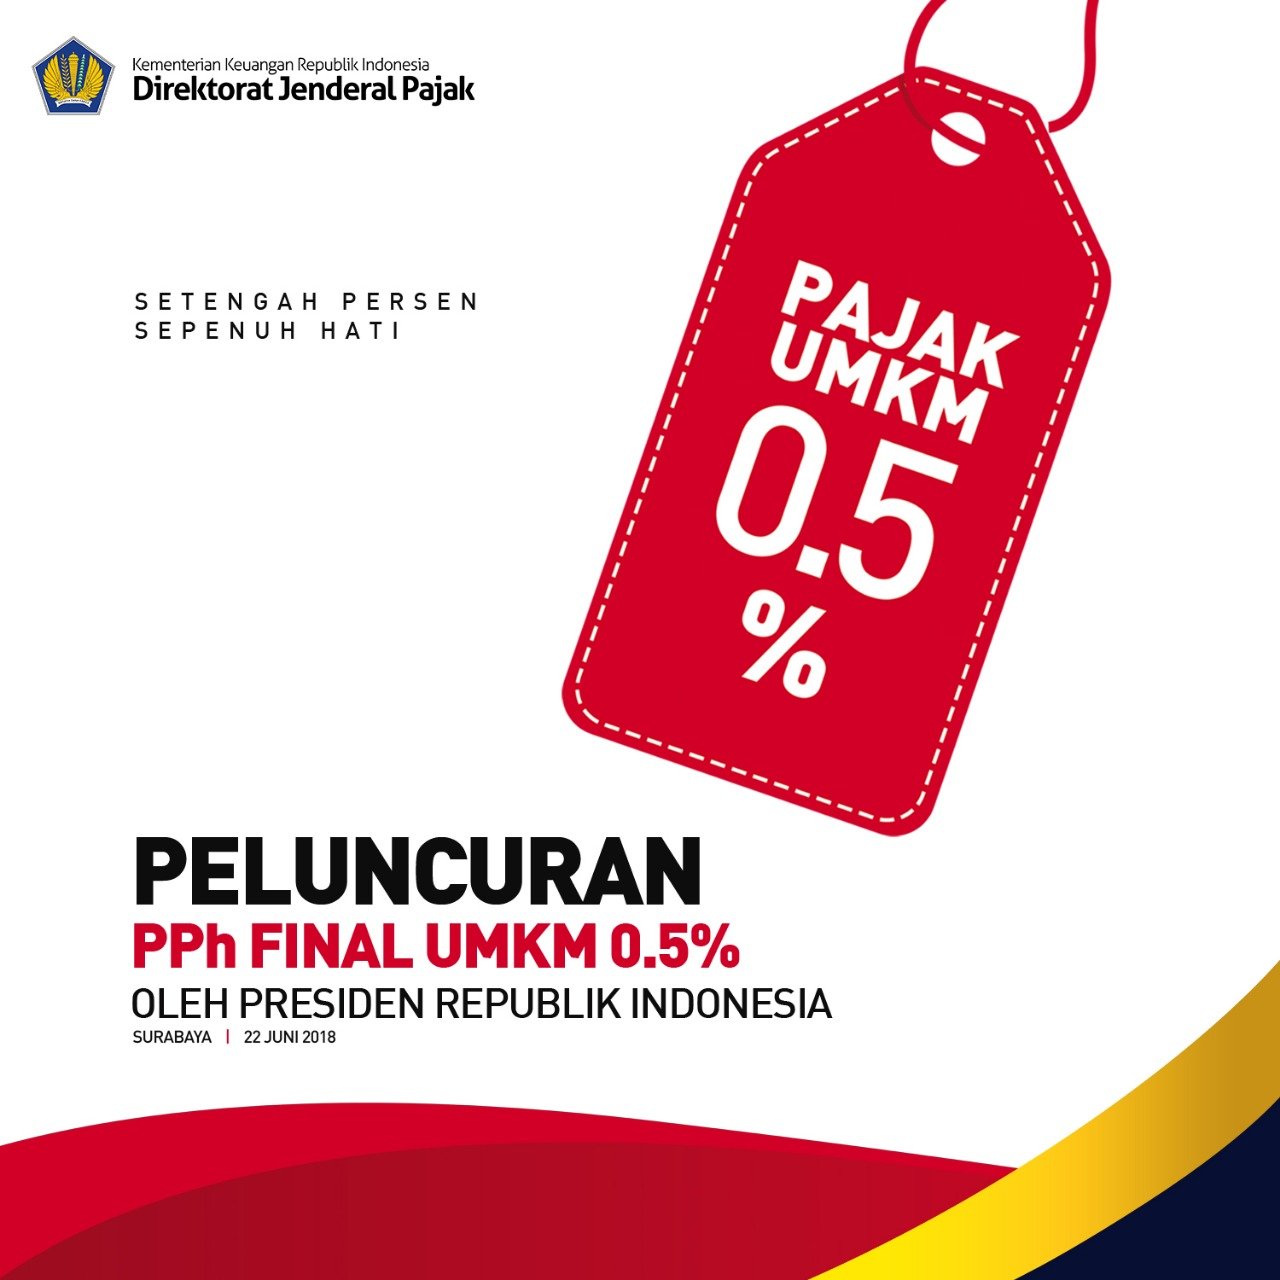 You are currently viewing Tarif UMKM Terbaru Tahun 2018 Berdasarkan PP 23 / 2018 Serta Surat Keterangan Bebas yang Baru